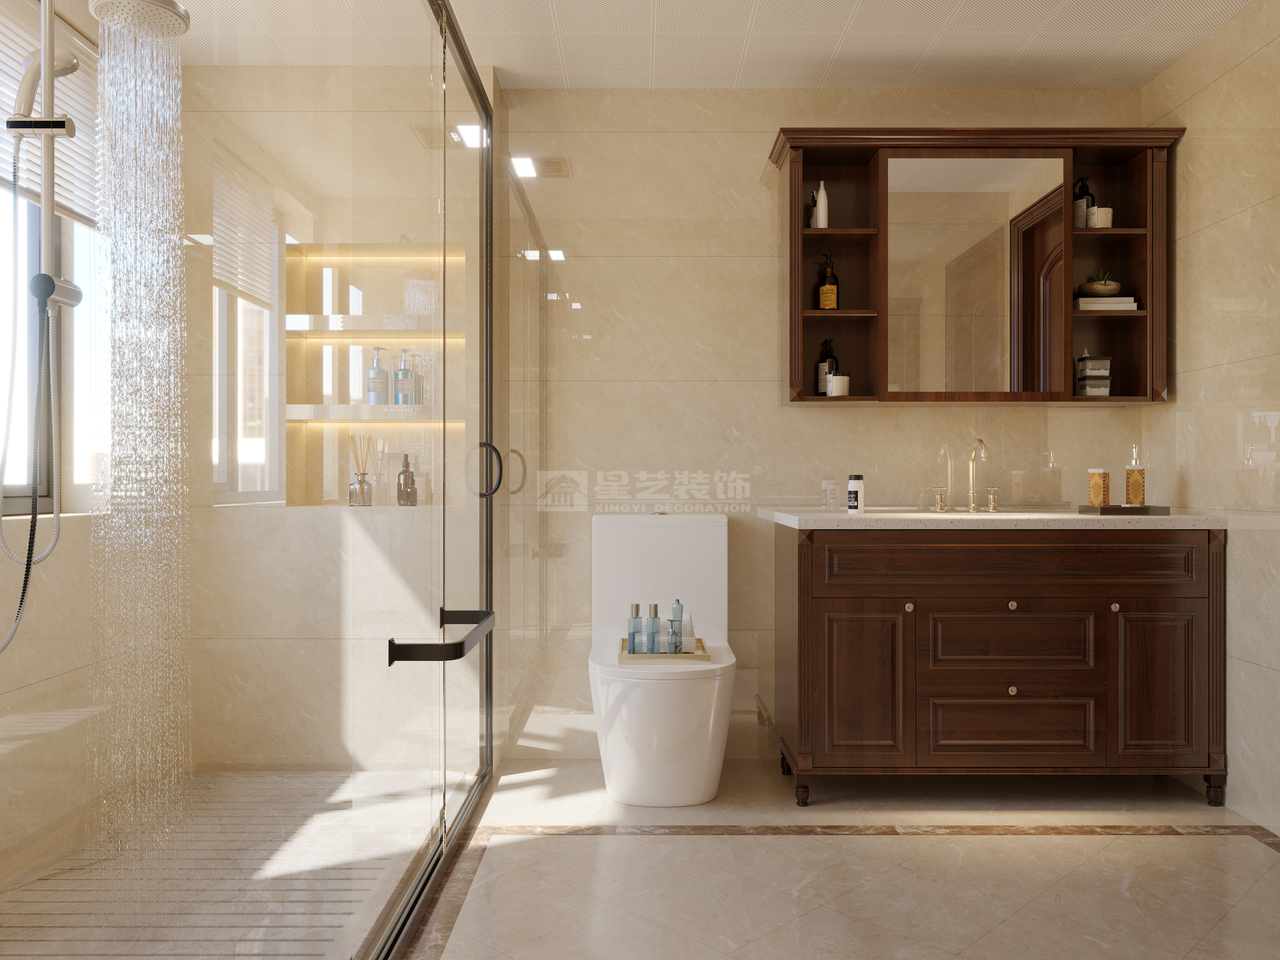 经典的暖色调彰显浴室的简洁、大方

现代的线条辅以明亮的光线，简约干净

原木家具烘托空间的自然气息，简单大气